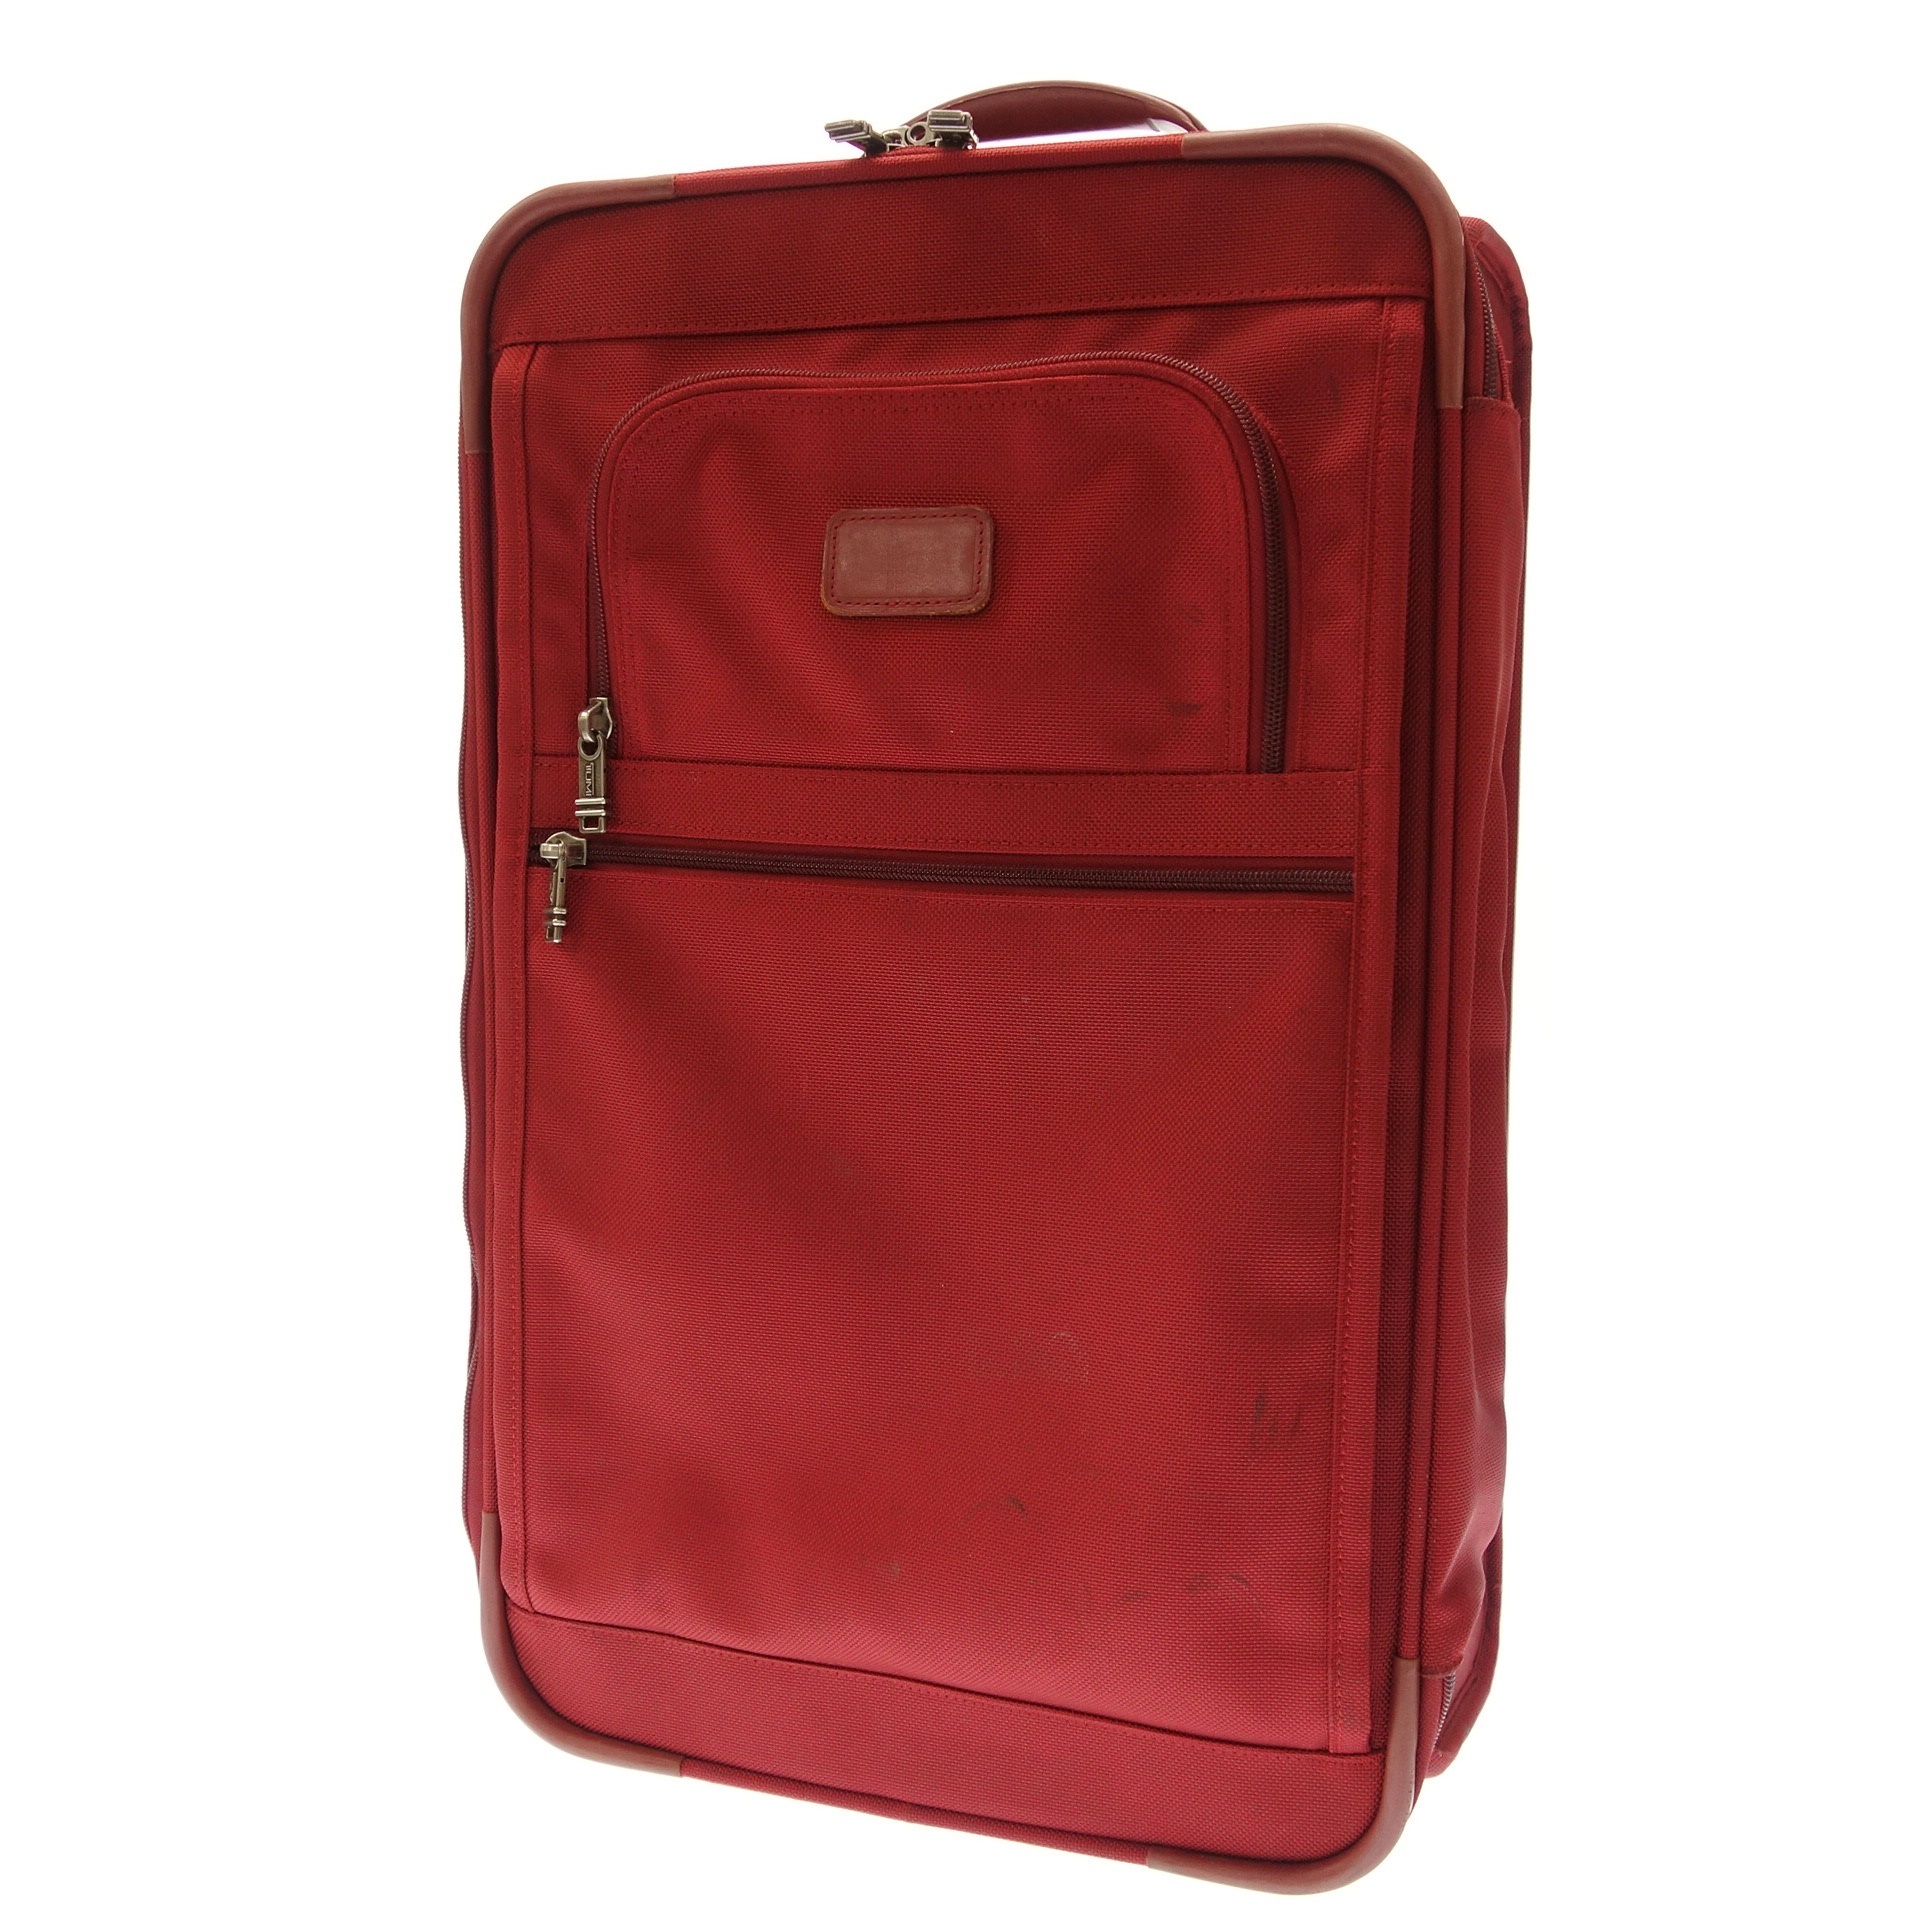 トゥミ キャリーバッグ スーツケース 2輪 バリスティック 赤 TUMI【中古】 | ストックラボ